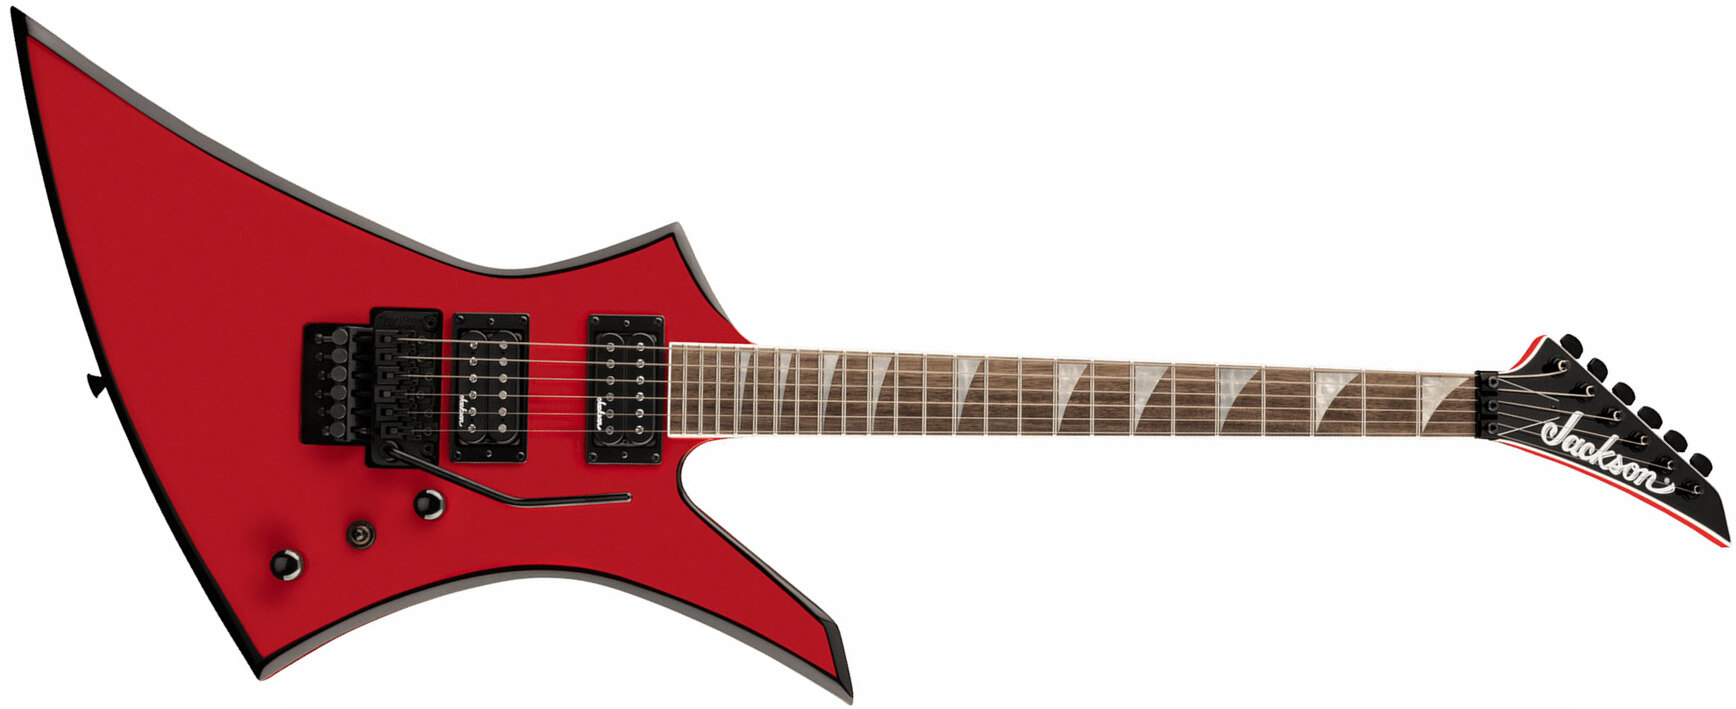 Jackson Kelly Kex 2h Fr Lau - Ferrari Red - Guitarra electrica metalica - Main picture